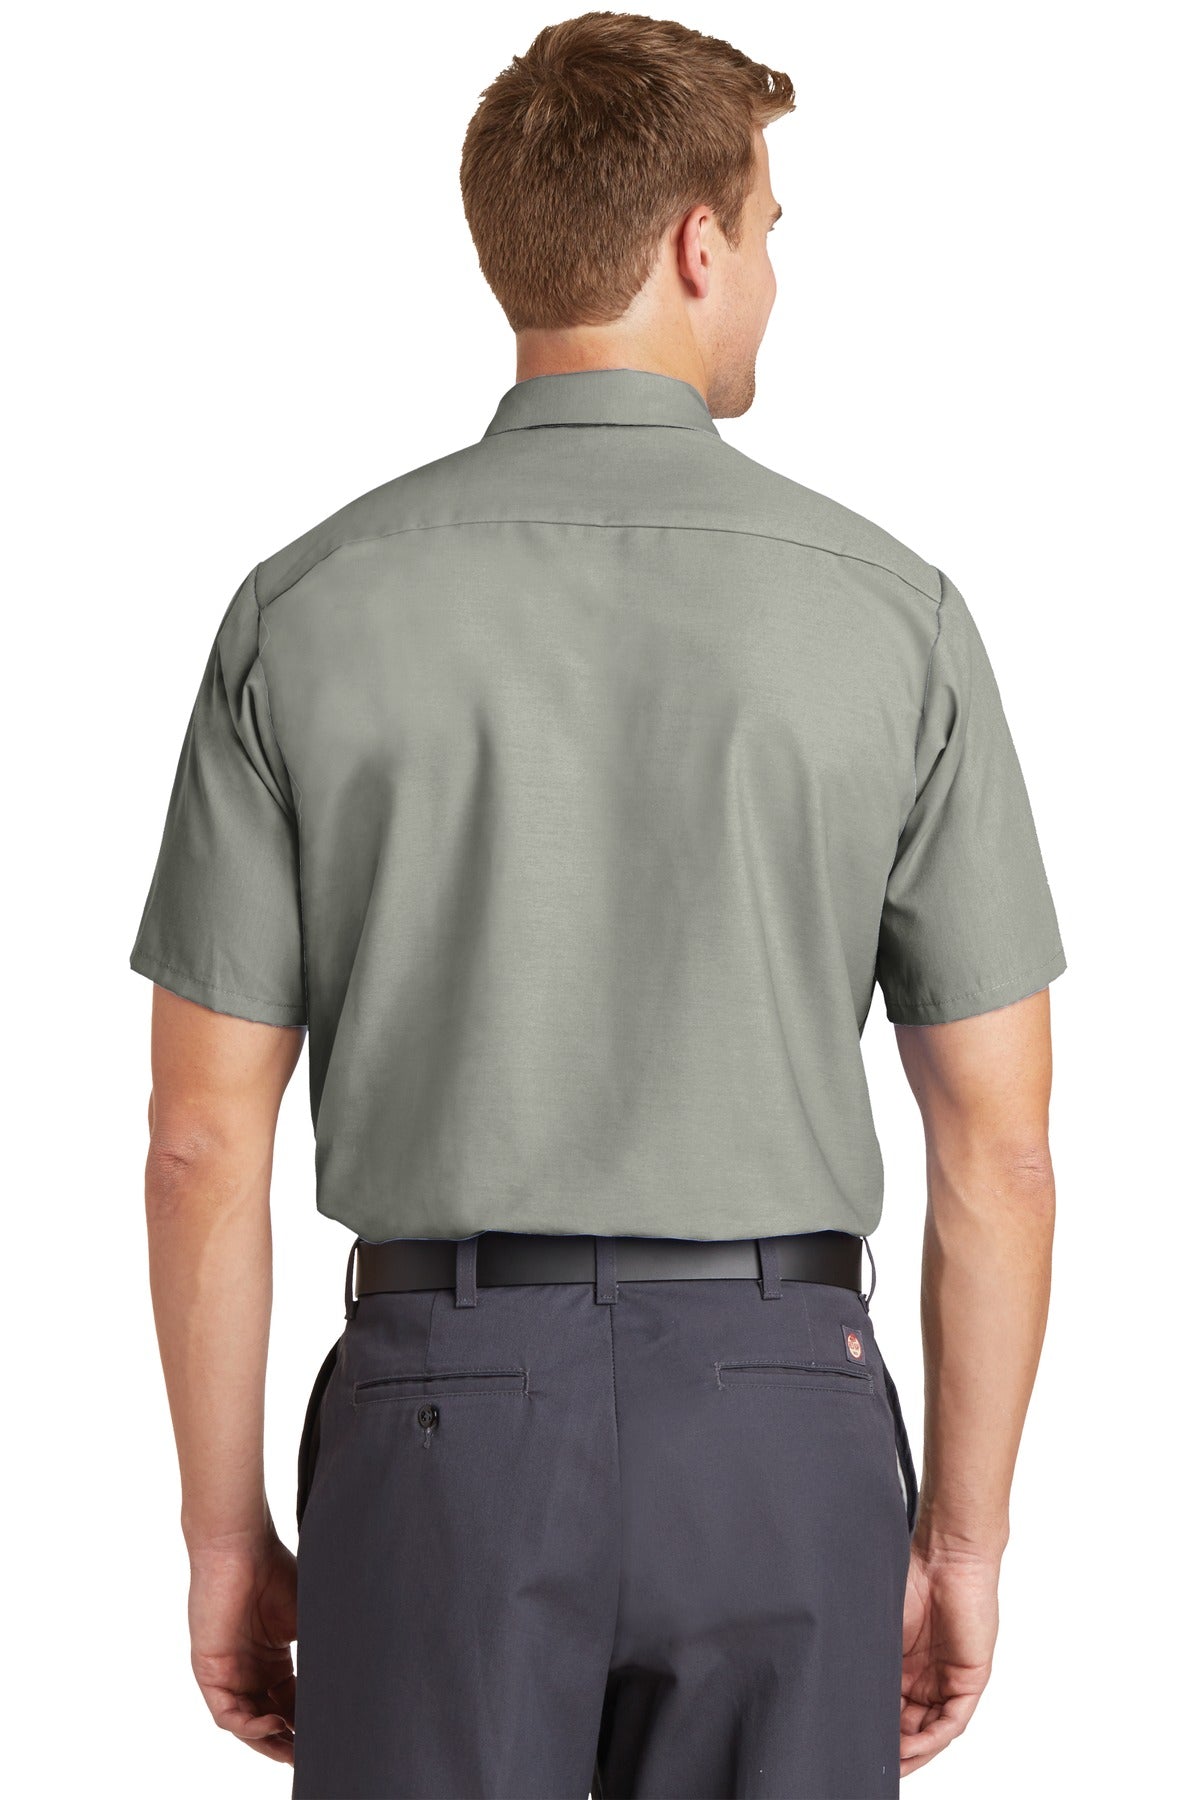 Red Kap Men’s Tall Short Sleeve Industrial Work Shirt. SP24LONG.